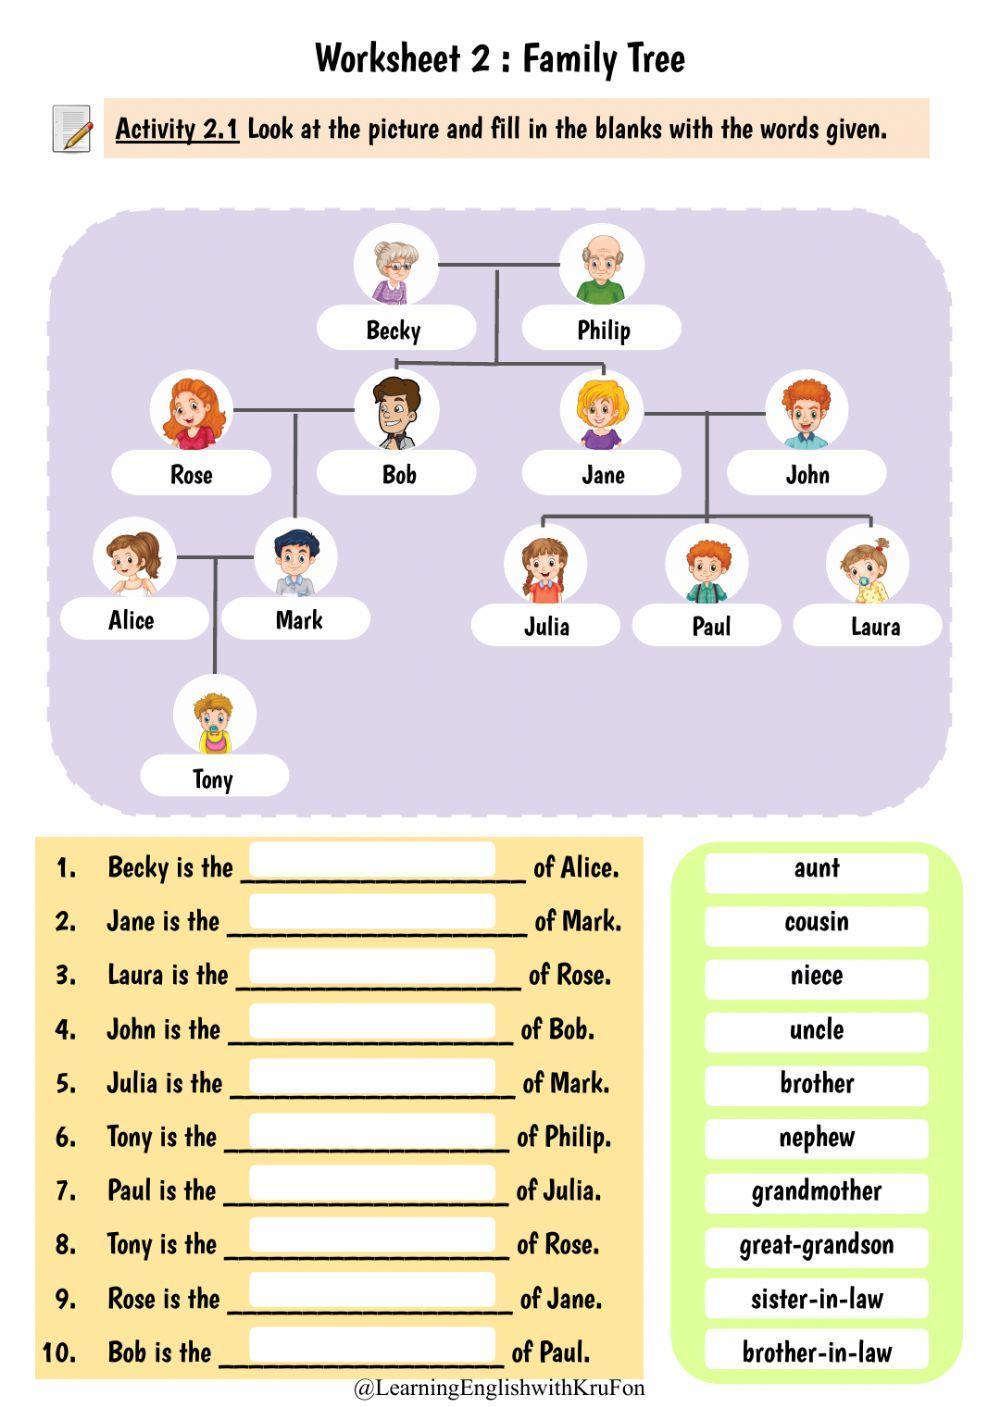 Worksheet:2 Family Tree